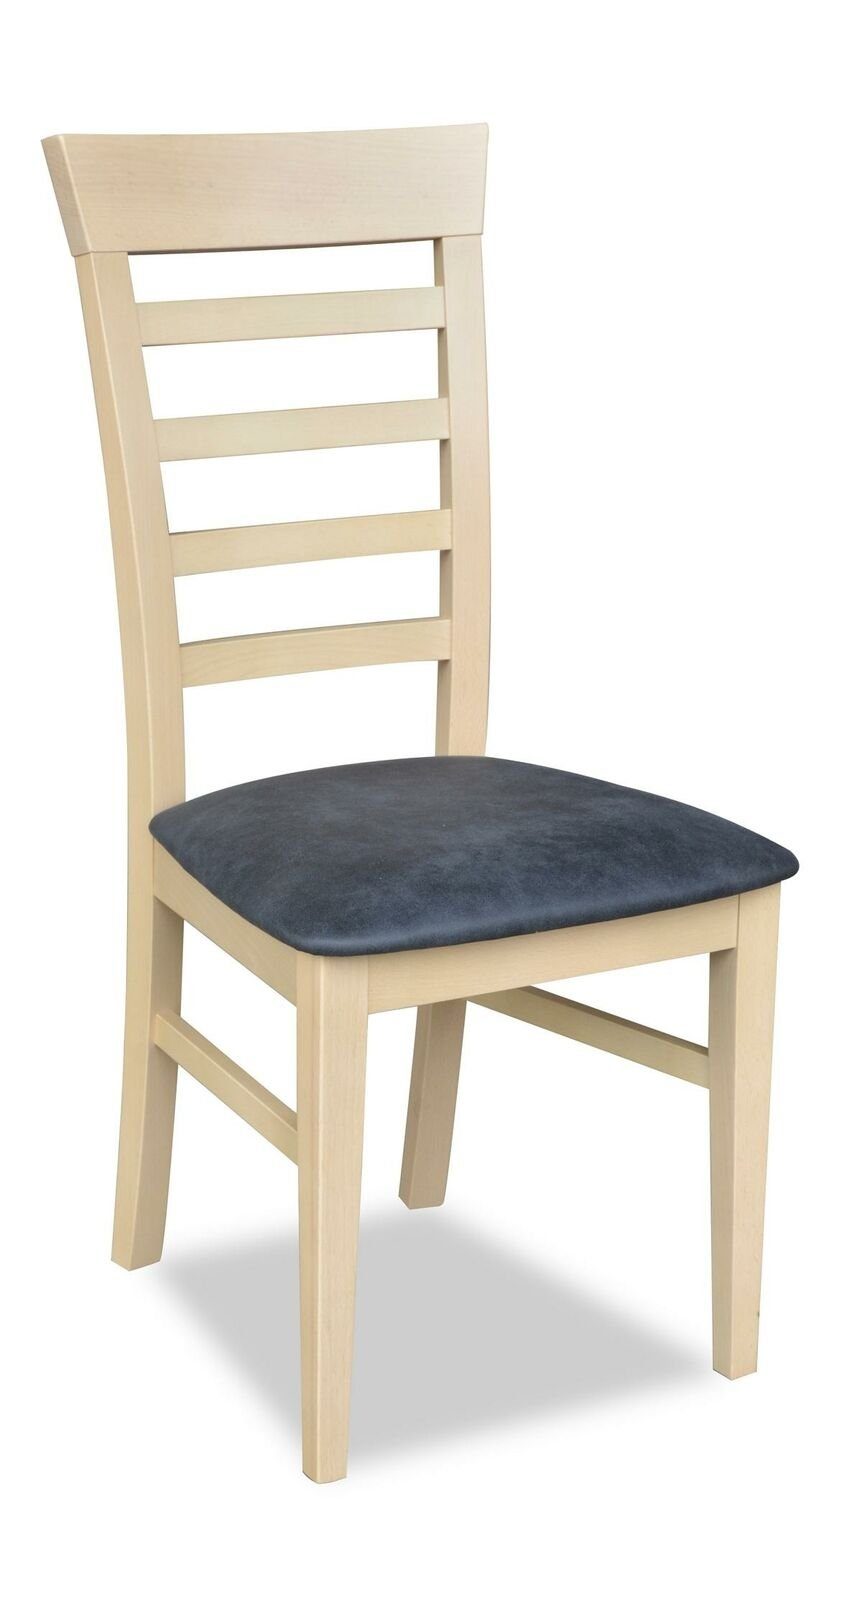 8x Sessel Stühle Holz Gruppe Gastro Design JVmoebel Garnitur Leder Stuhl Stuhl, Set Esszimmer